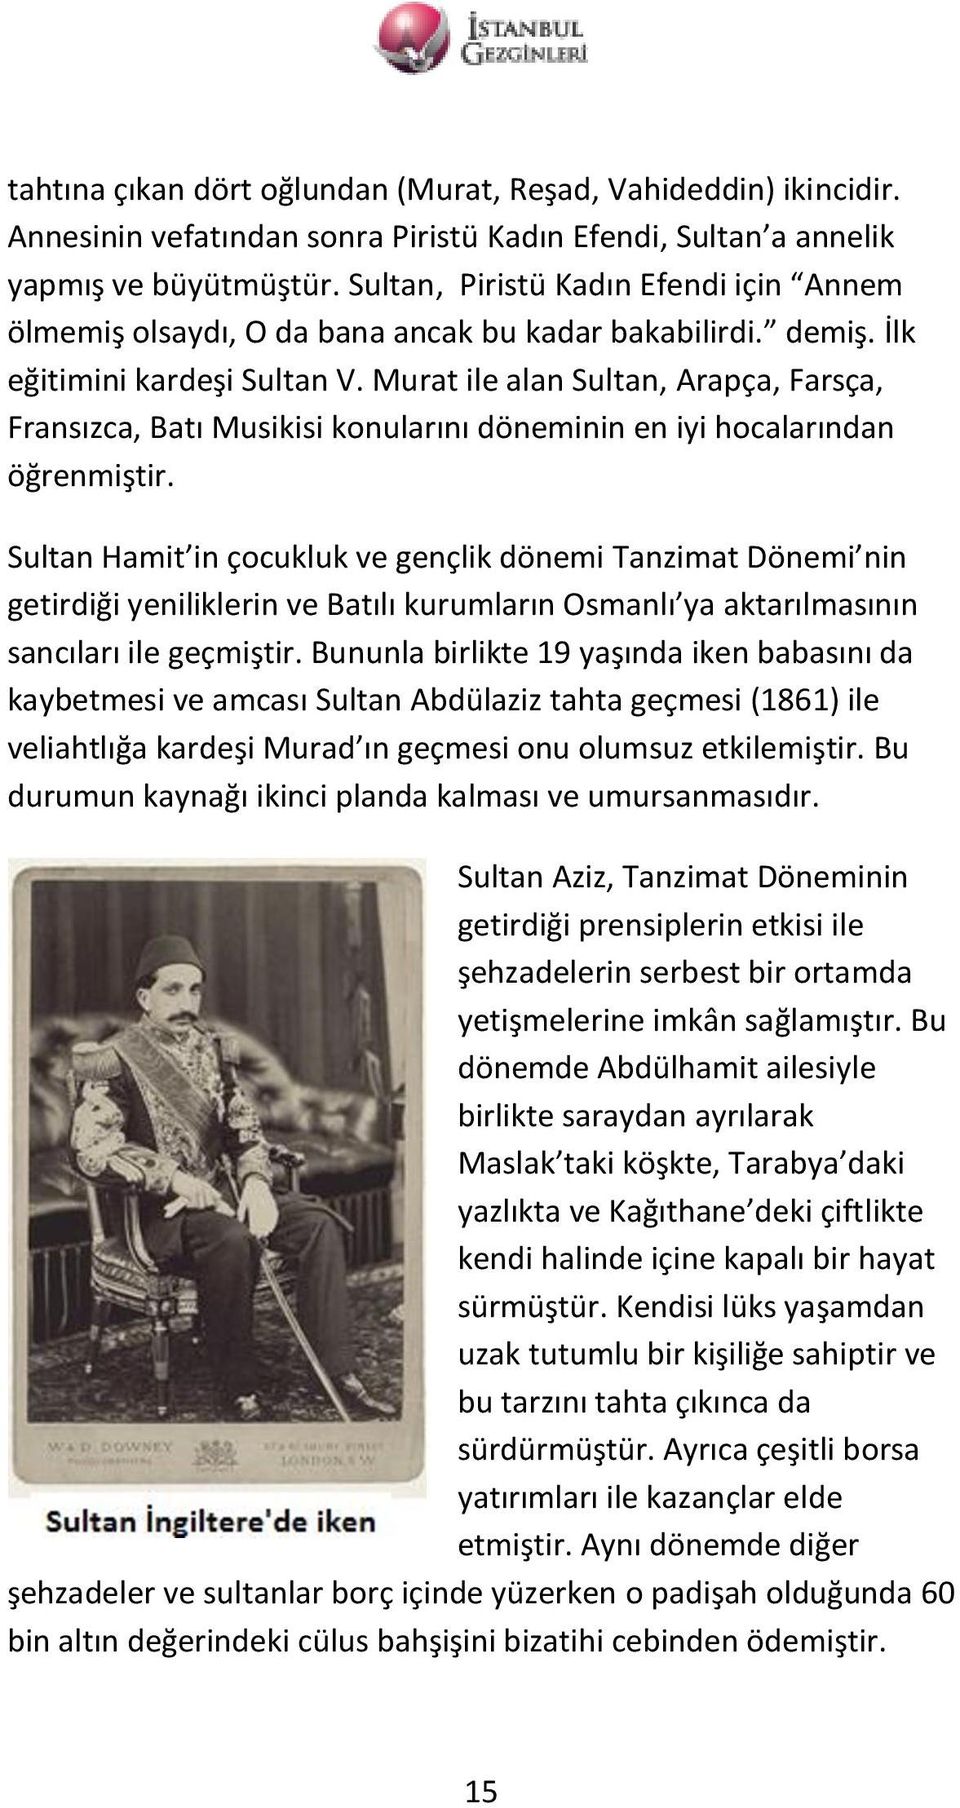 Murat ile alan Sultan, Arapça, Farsça, Fransızca, Batı Musikisi konularını döneminin en iyi hocalarından öğrenmiştir.